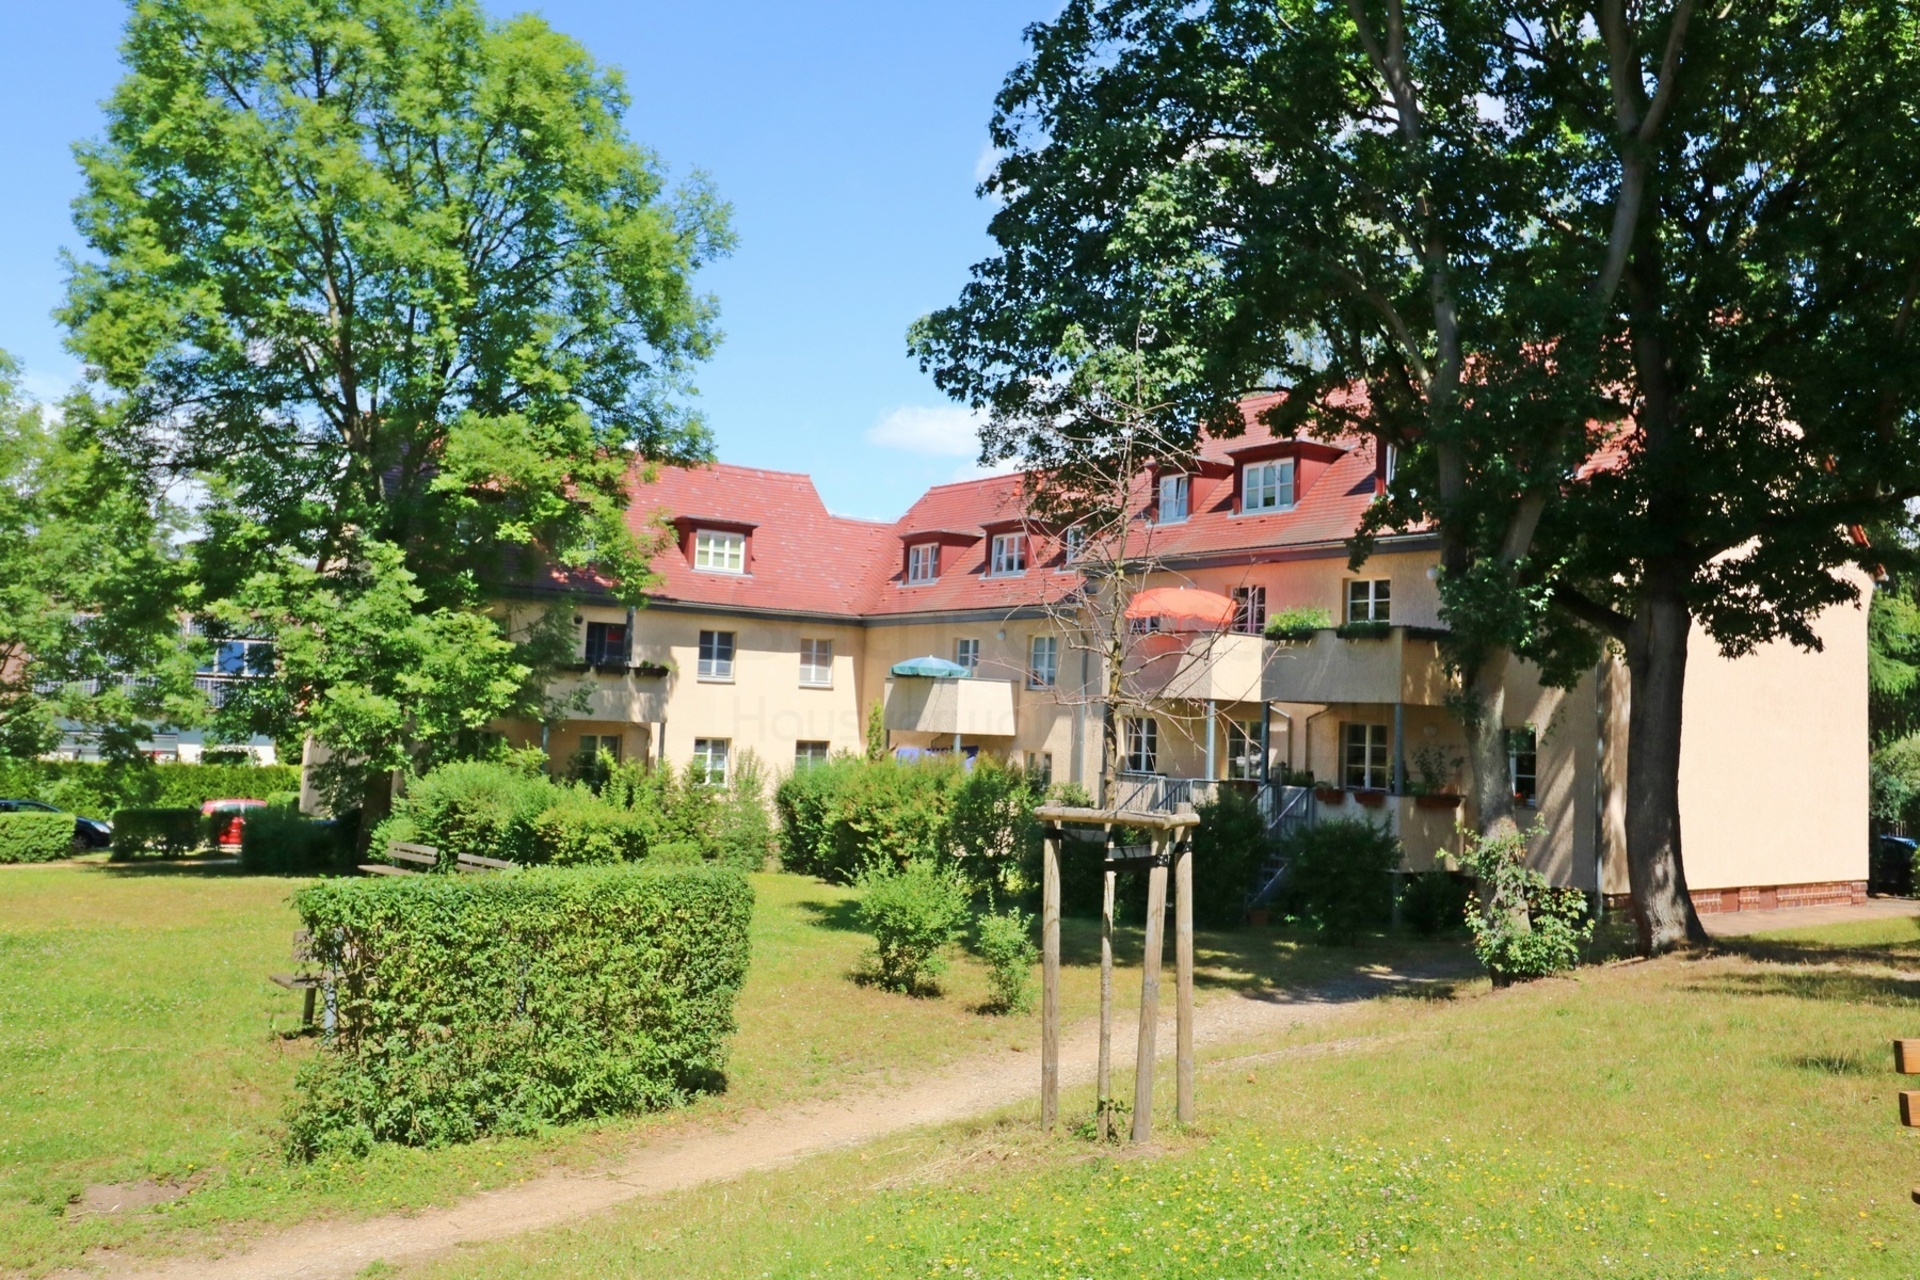 Exklusive Maisonette-Wohnung: 2 Bäder, Balkon & idyllische Grünflächen in Leipzig-Dölitz, 04279 Leipzig, Maisonettewohnung